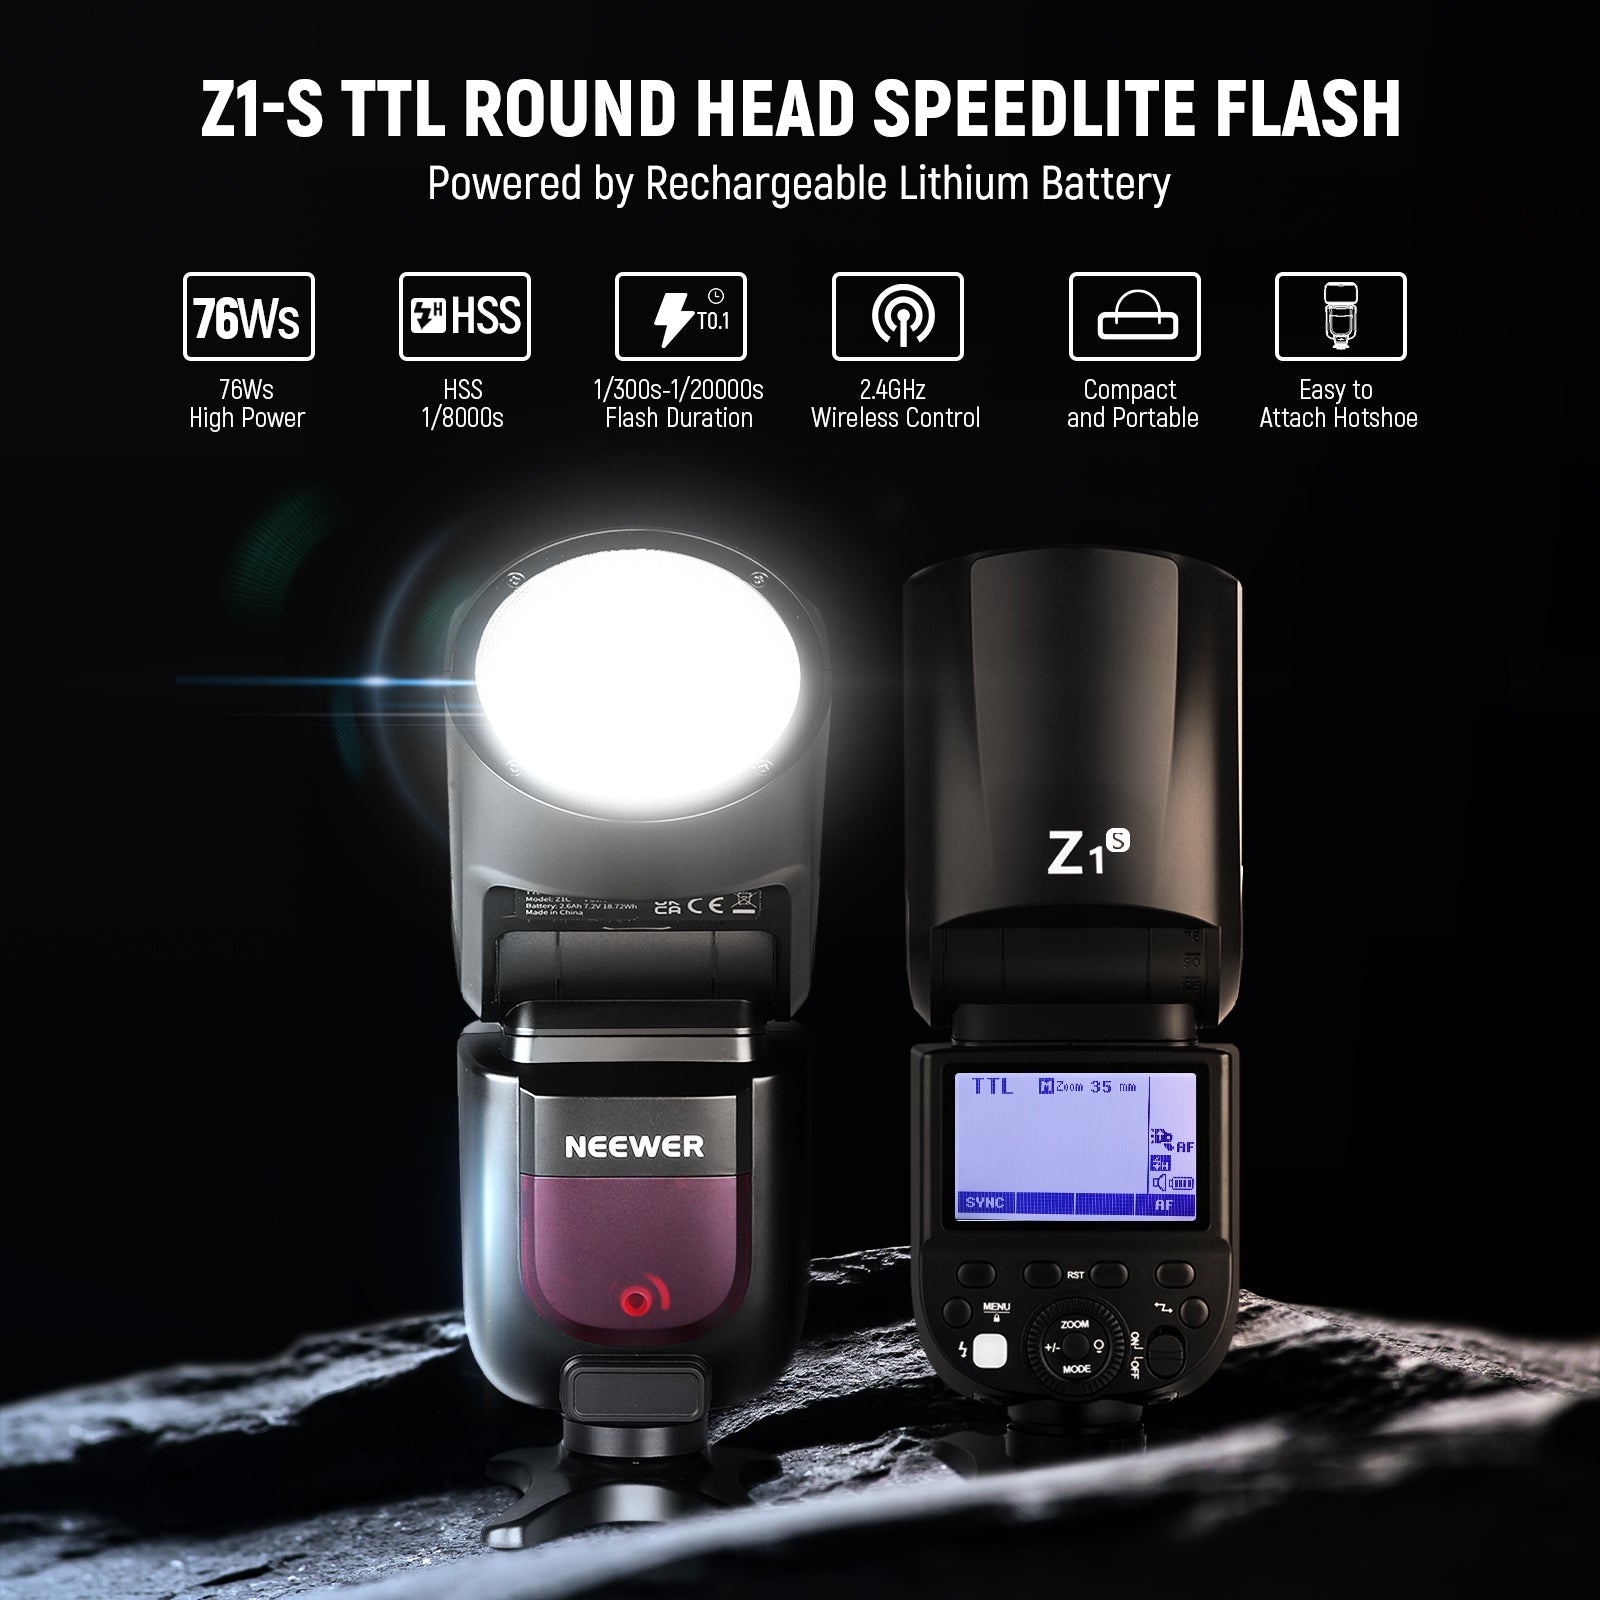 NEEWER Z1-S TTL Round Head Flash Speedlite for Sony Cameras